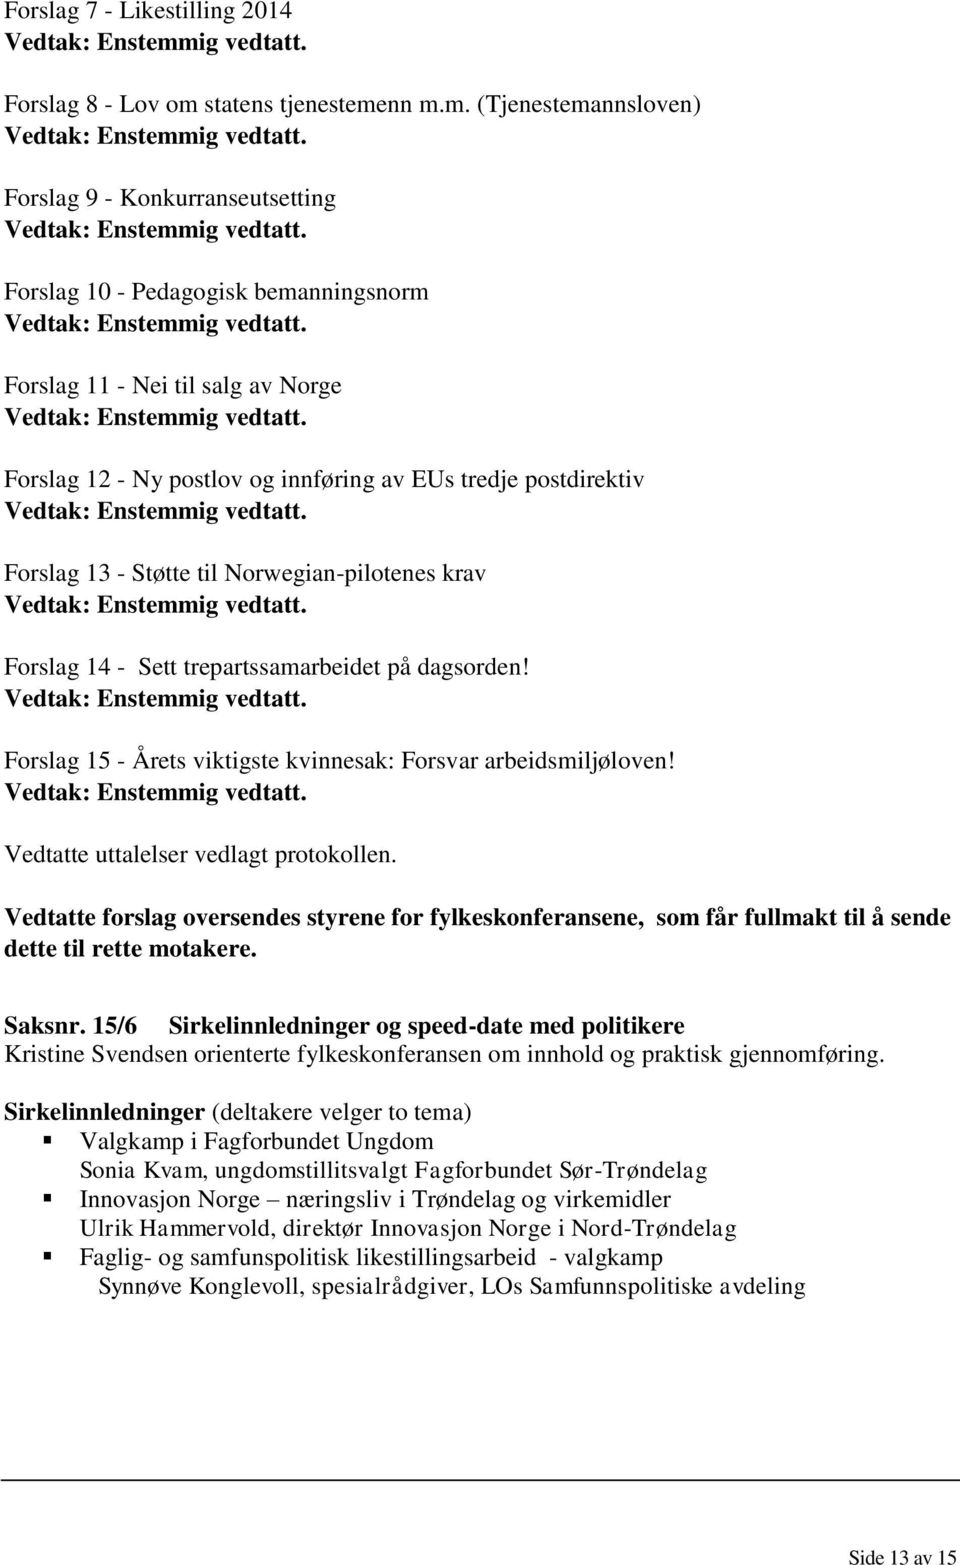 nn m.m. (Tjenestemannsloven) Forslag 9 - Konkurranseutsetting Forslag 10 - Pedagogisk bemanningsnorm Forslag 11 - Nei til salg av Norge Forslag 12 - Ny postlov og innføring av EUs tredje postdirektiv